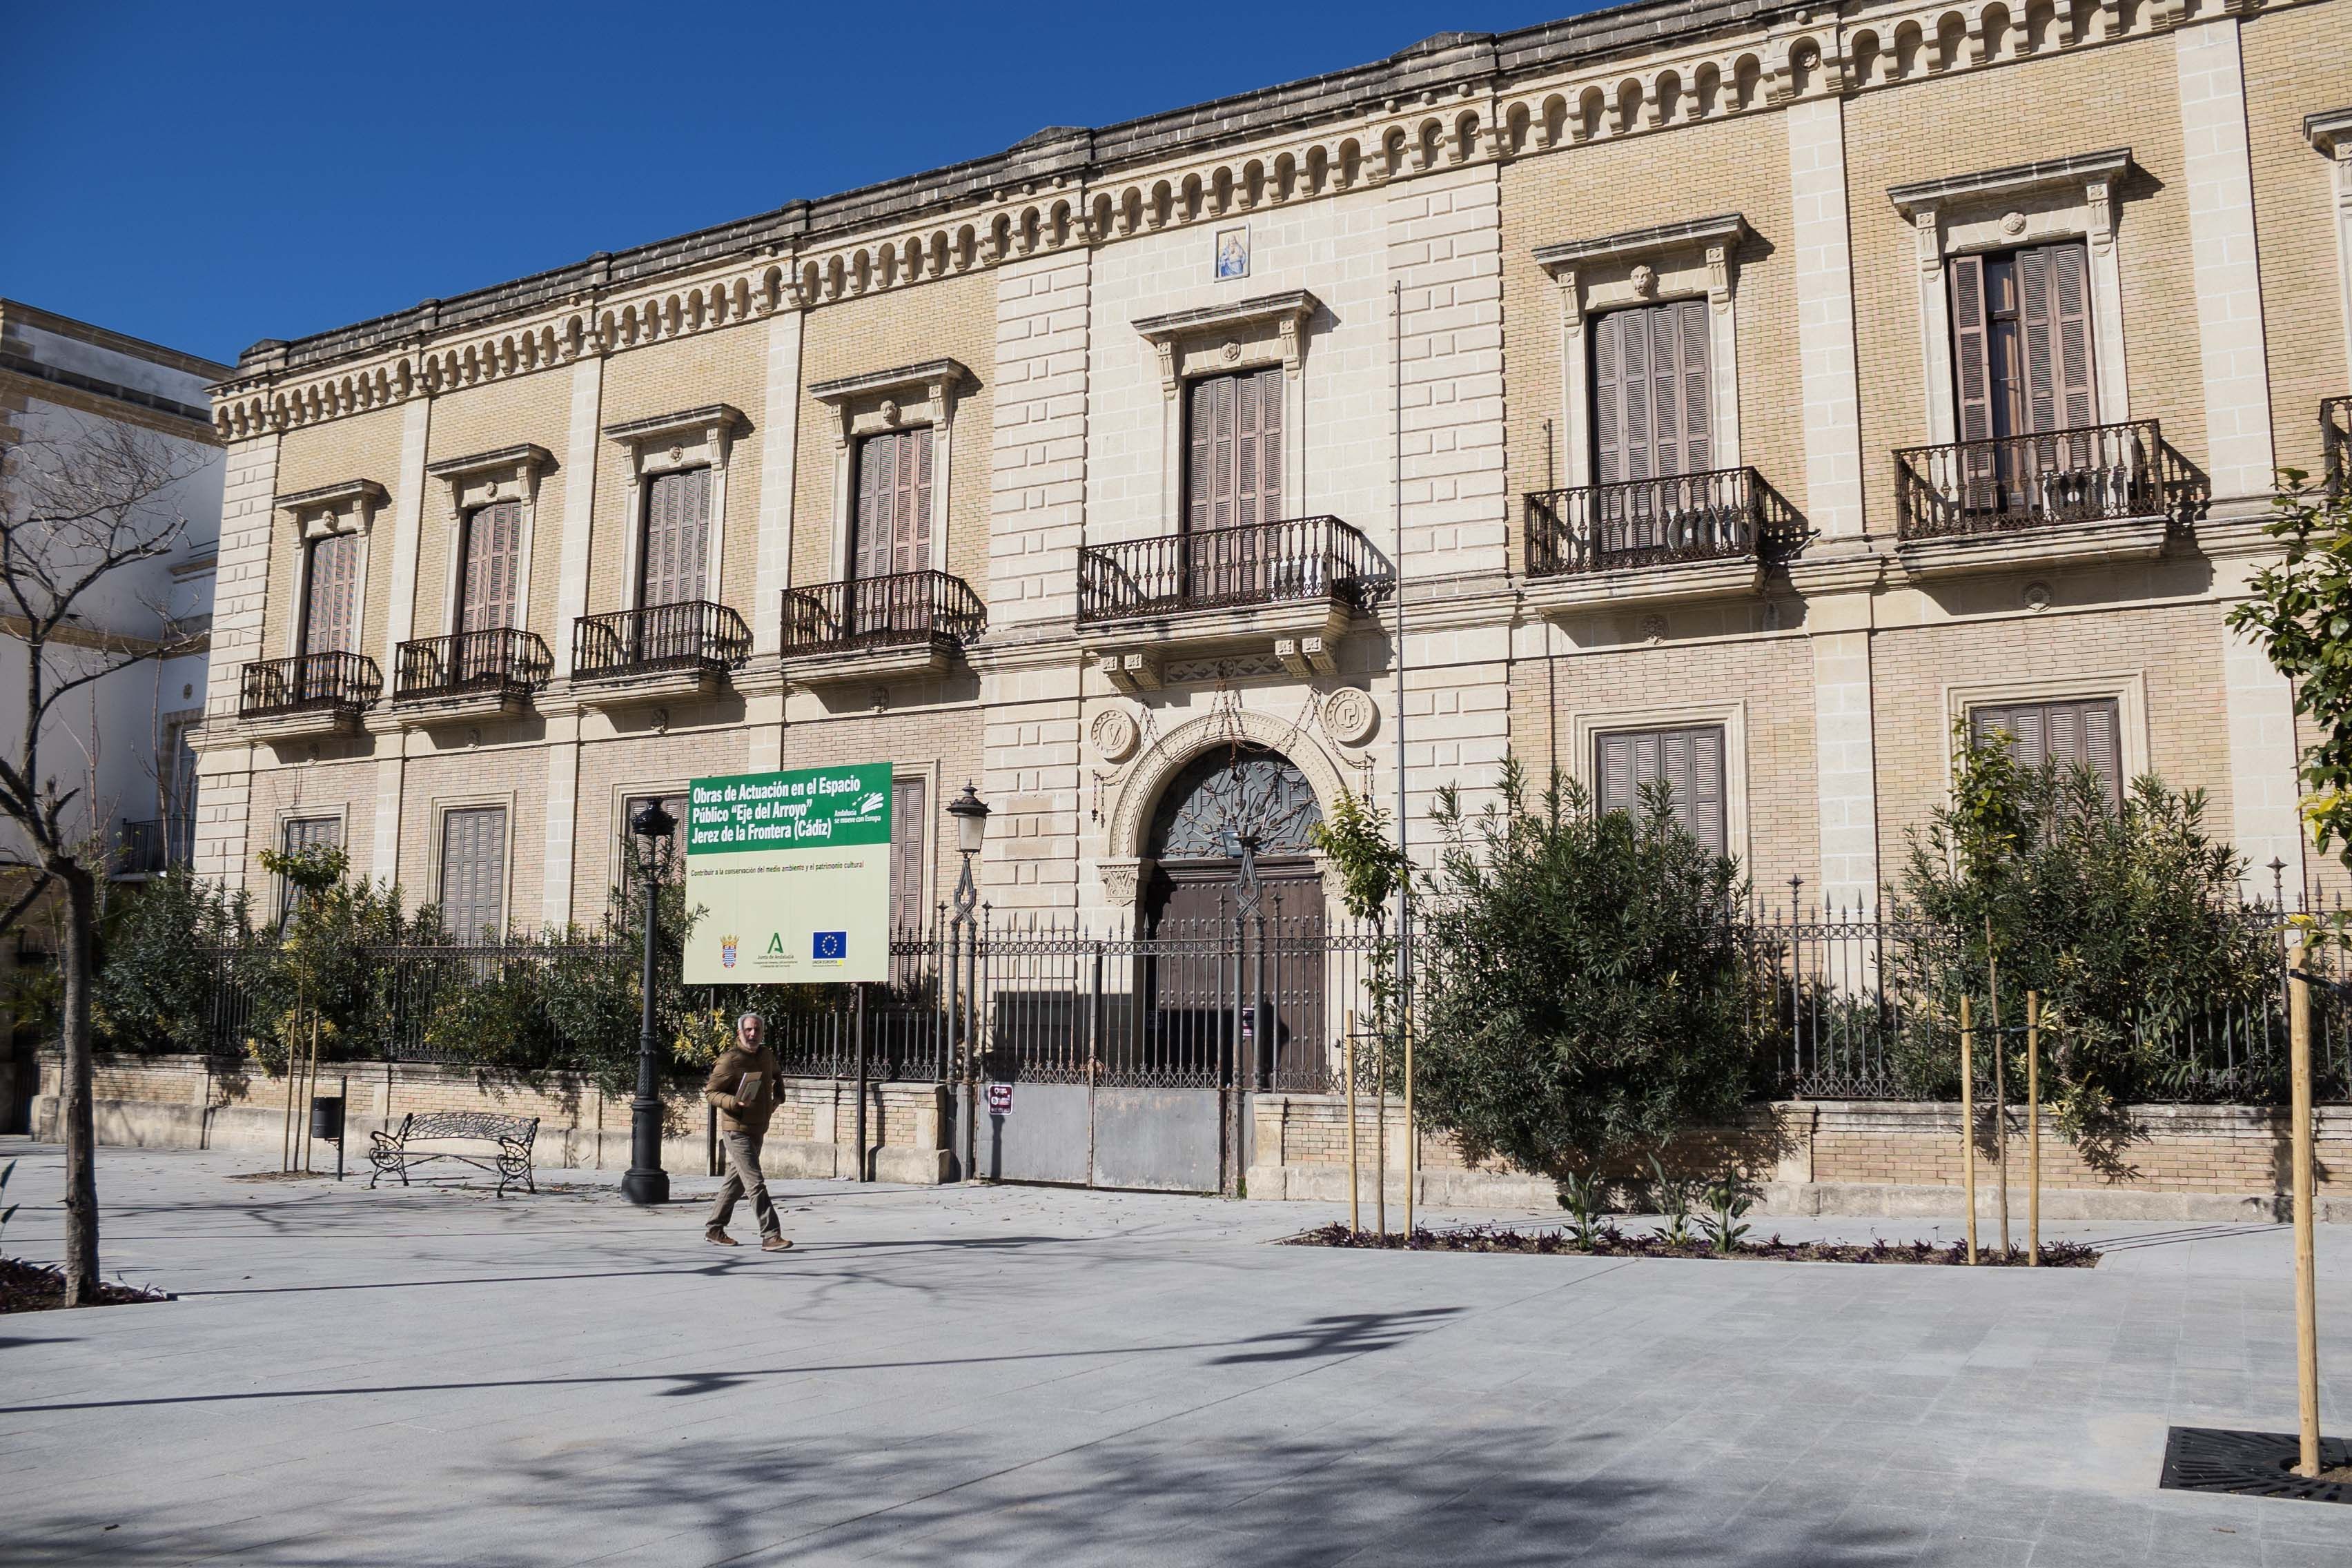 La comisaria del Arroyo, palacio de los condes de Puerto Hermoso, será un hotel de 4 estrellas.